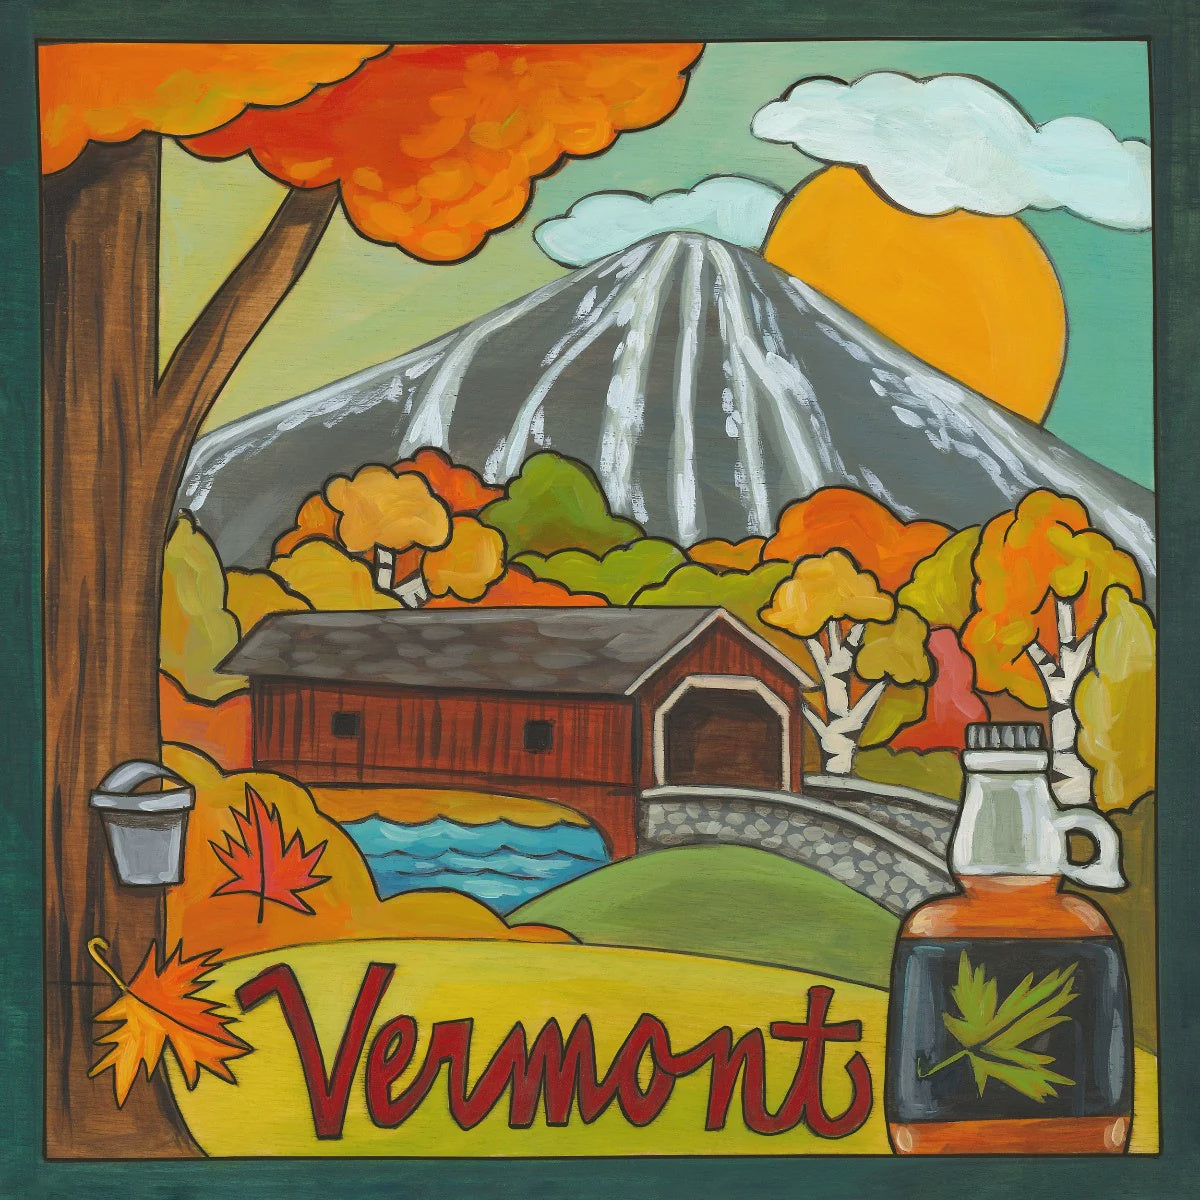 Vermont Plaque-I LoVermont